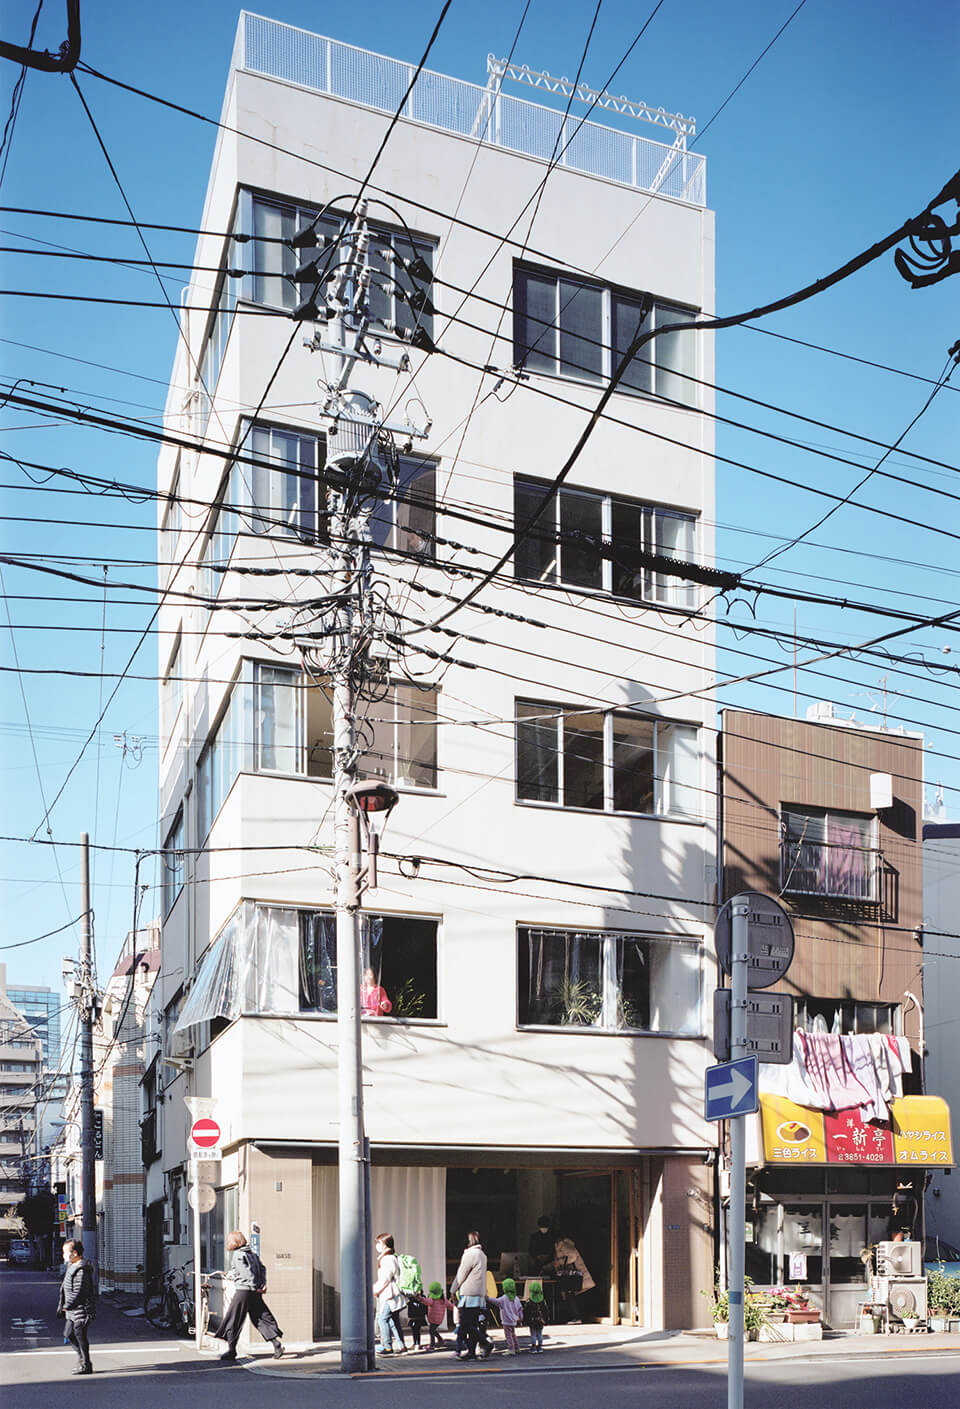 東京・浅草橋に立つ「BASE」。近隣には工房が多く、職人の作業風景が街に染み出している様子を参照し、街と緩やかにつながる場所を志向した